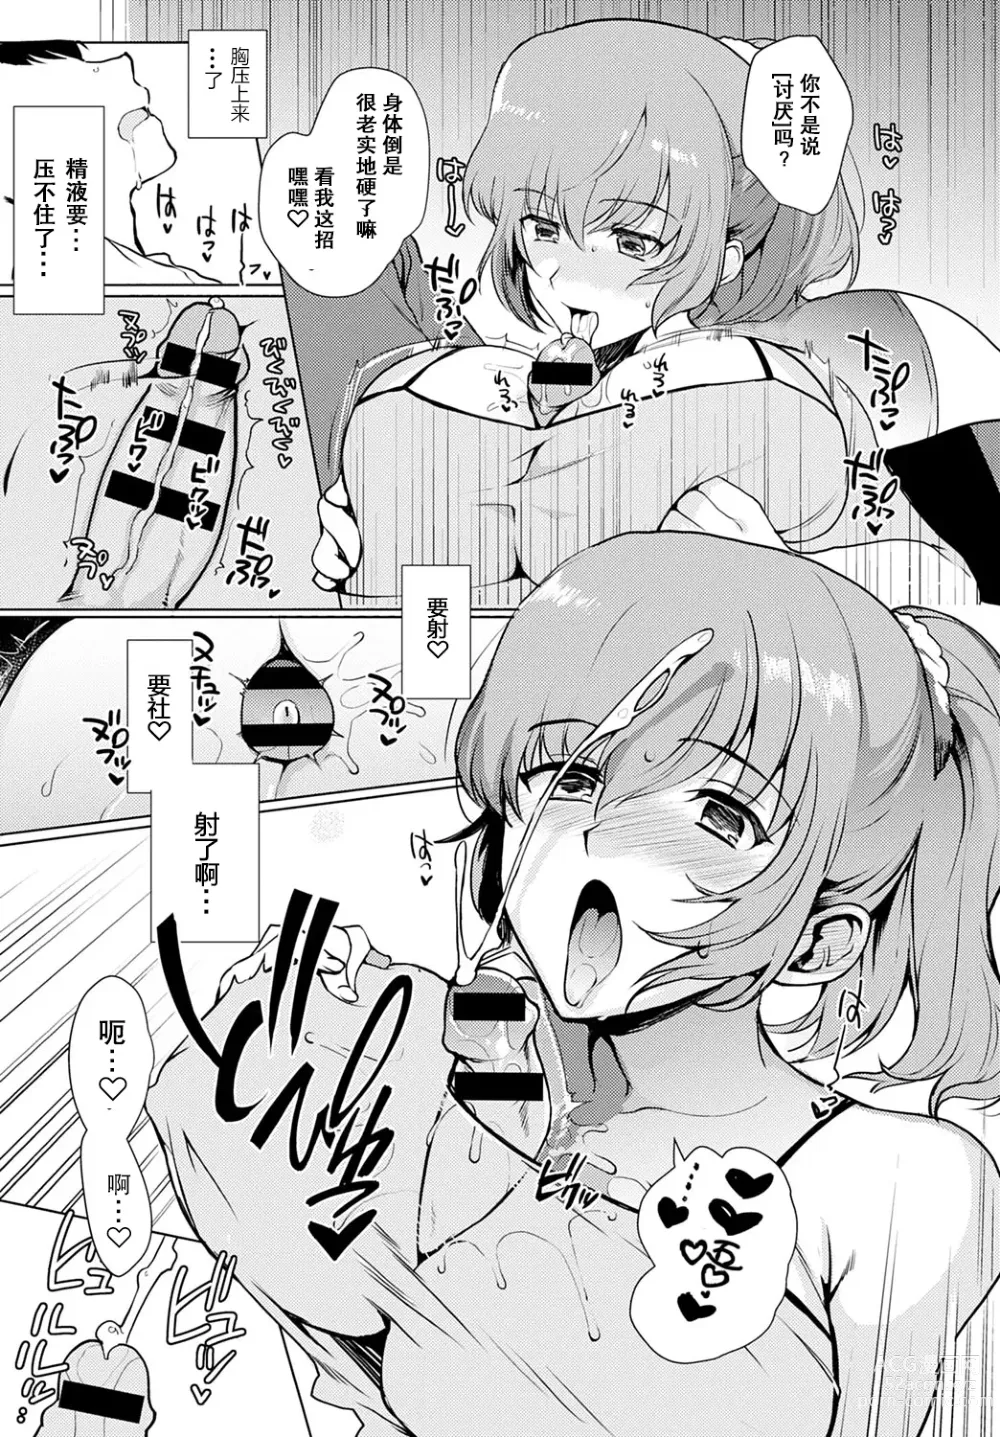 Page 9 of manga Kyoudai Switch Siblings Switch